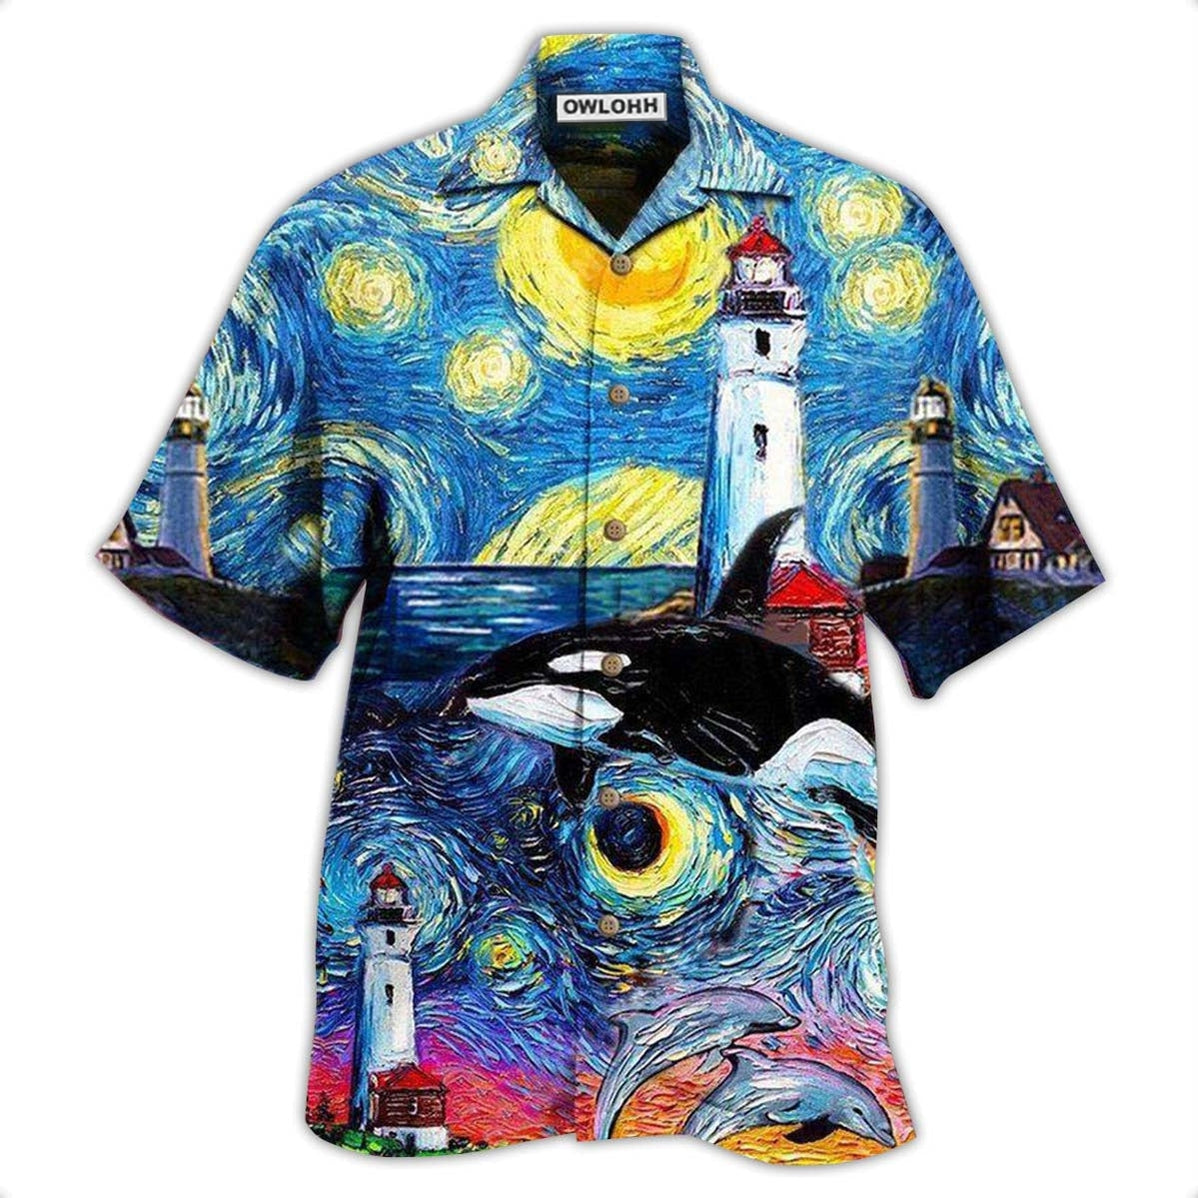 Hawaiian Shirt / Adults / S Lighthouse Finding Light In A Starry Night - Hawaiian Shirt - Owls Matrix LTD